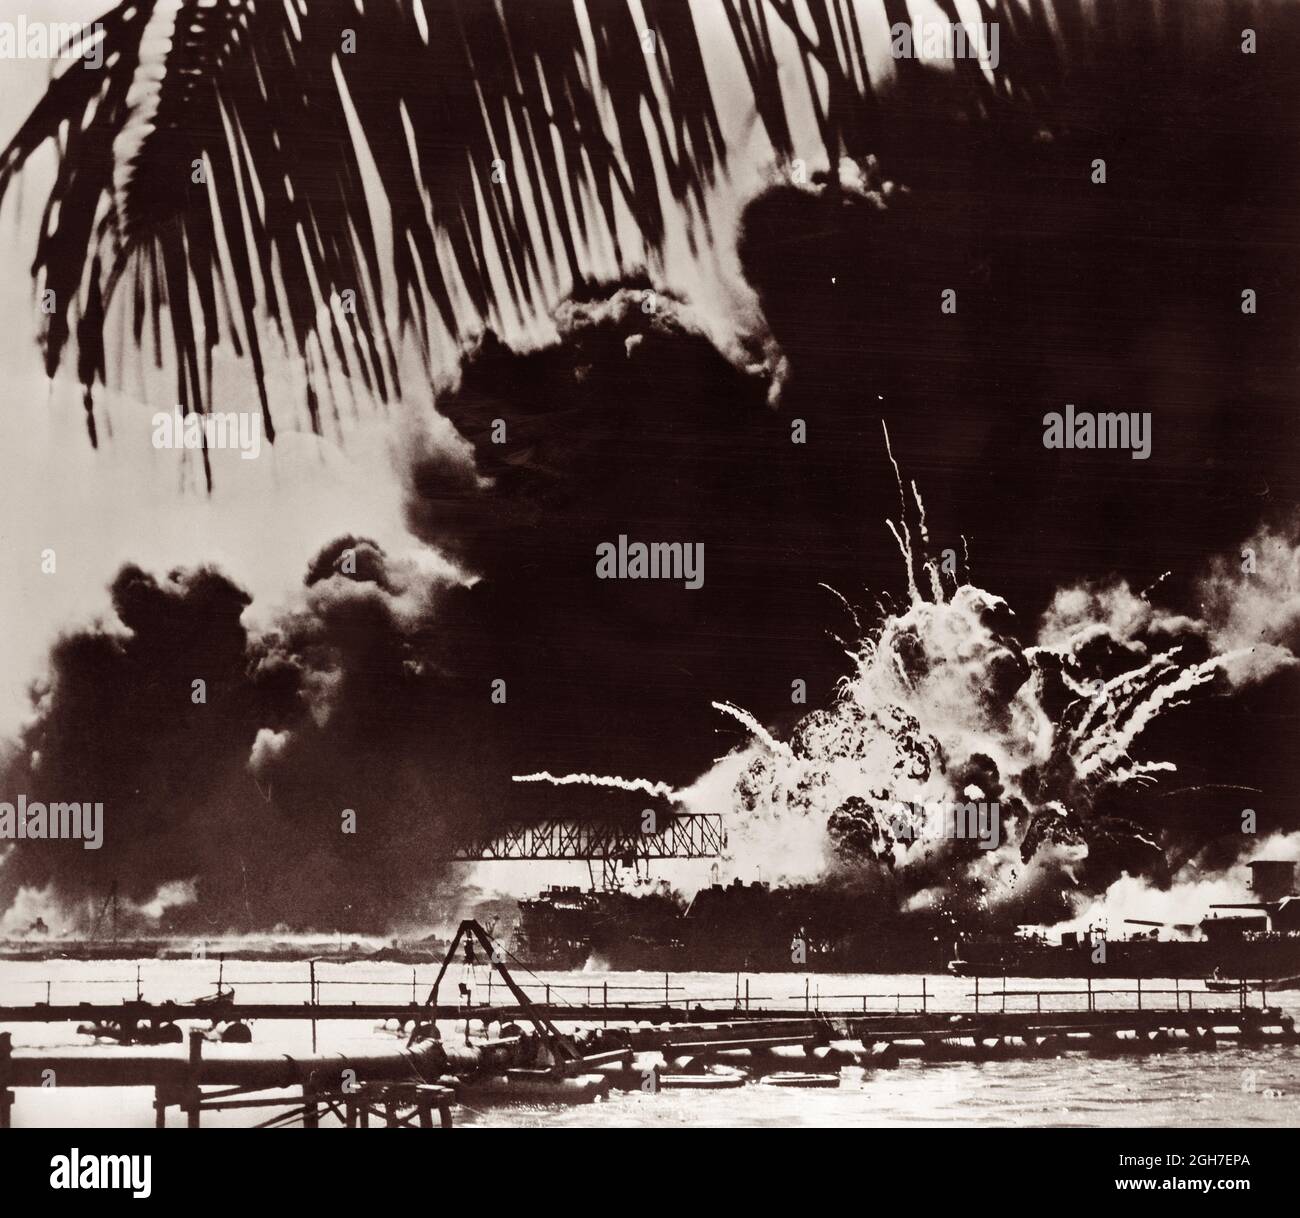 USS Shaw explodierte, nachdem ihr Vorzeigemagazin am 7. Dezember 1941 durch das wütende Feuer während des japanischen Überraschungsangriffs auf Pearl Harbor gezündet wurde. Stockfoto